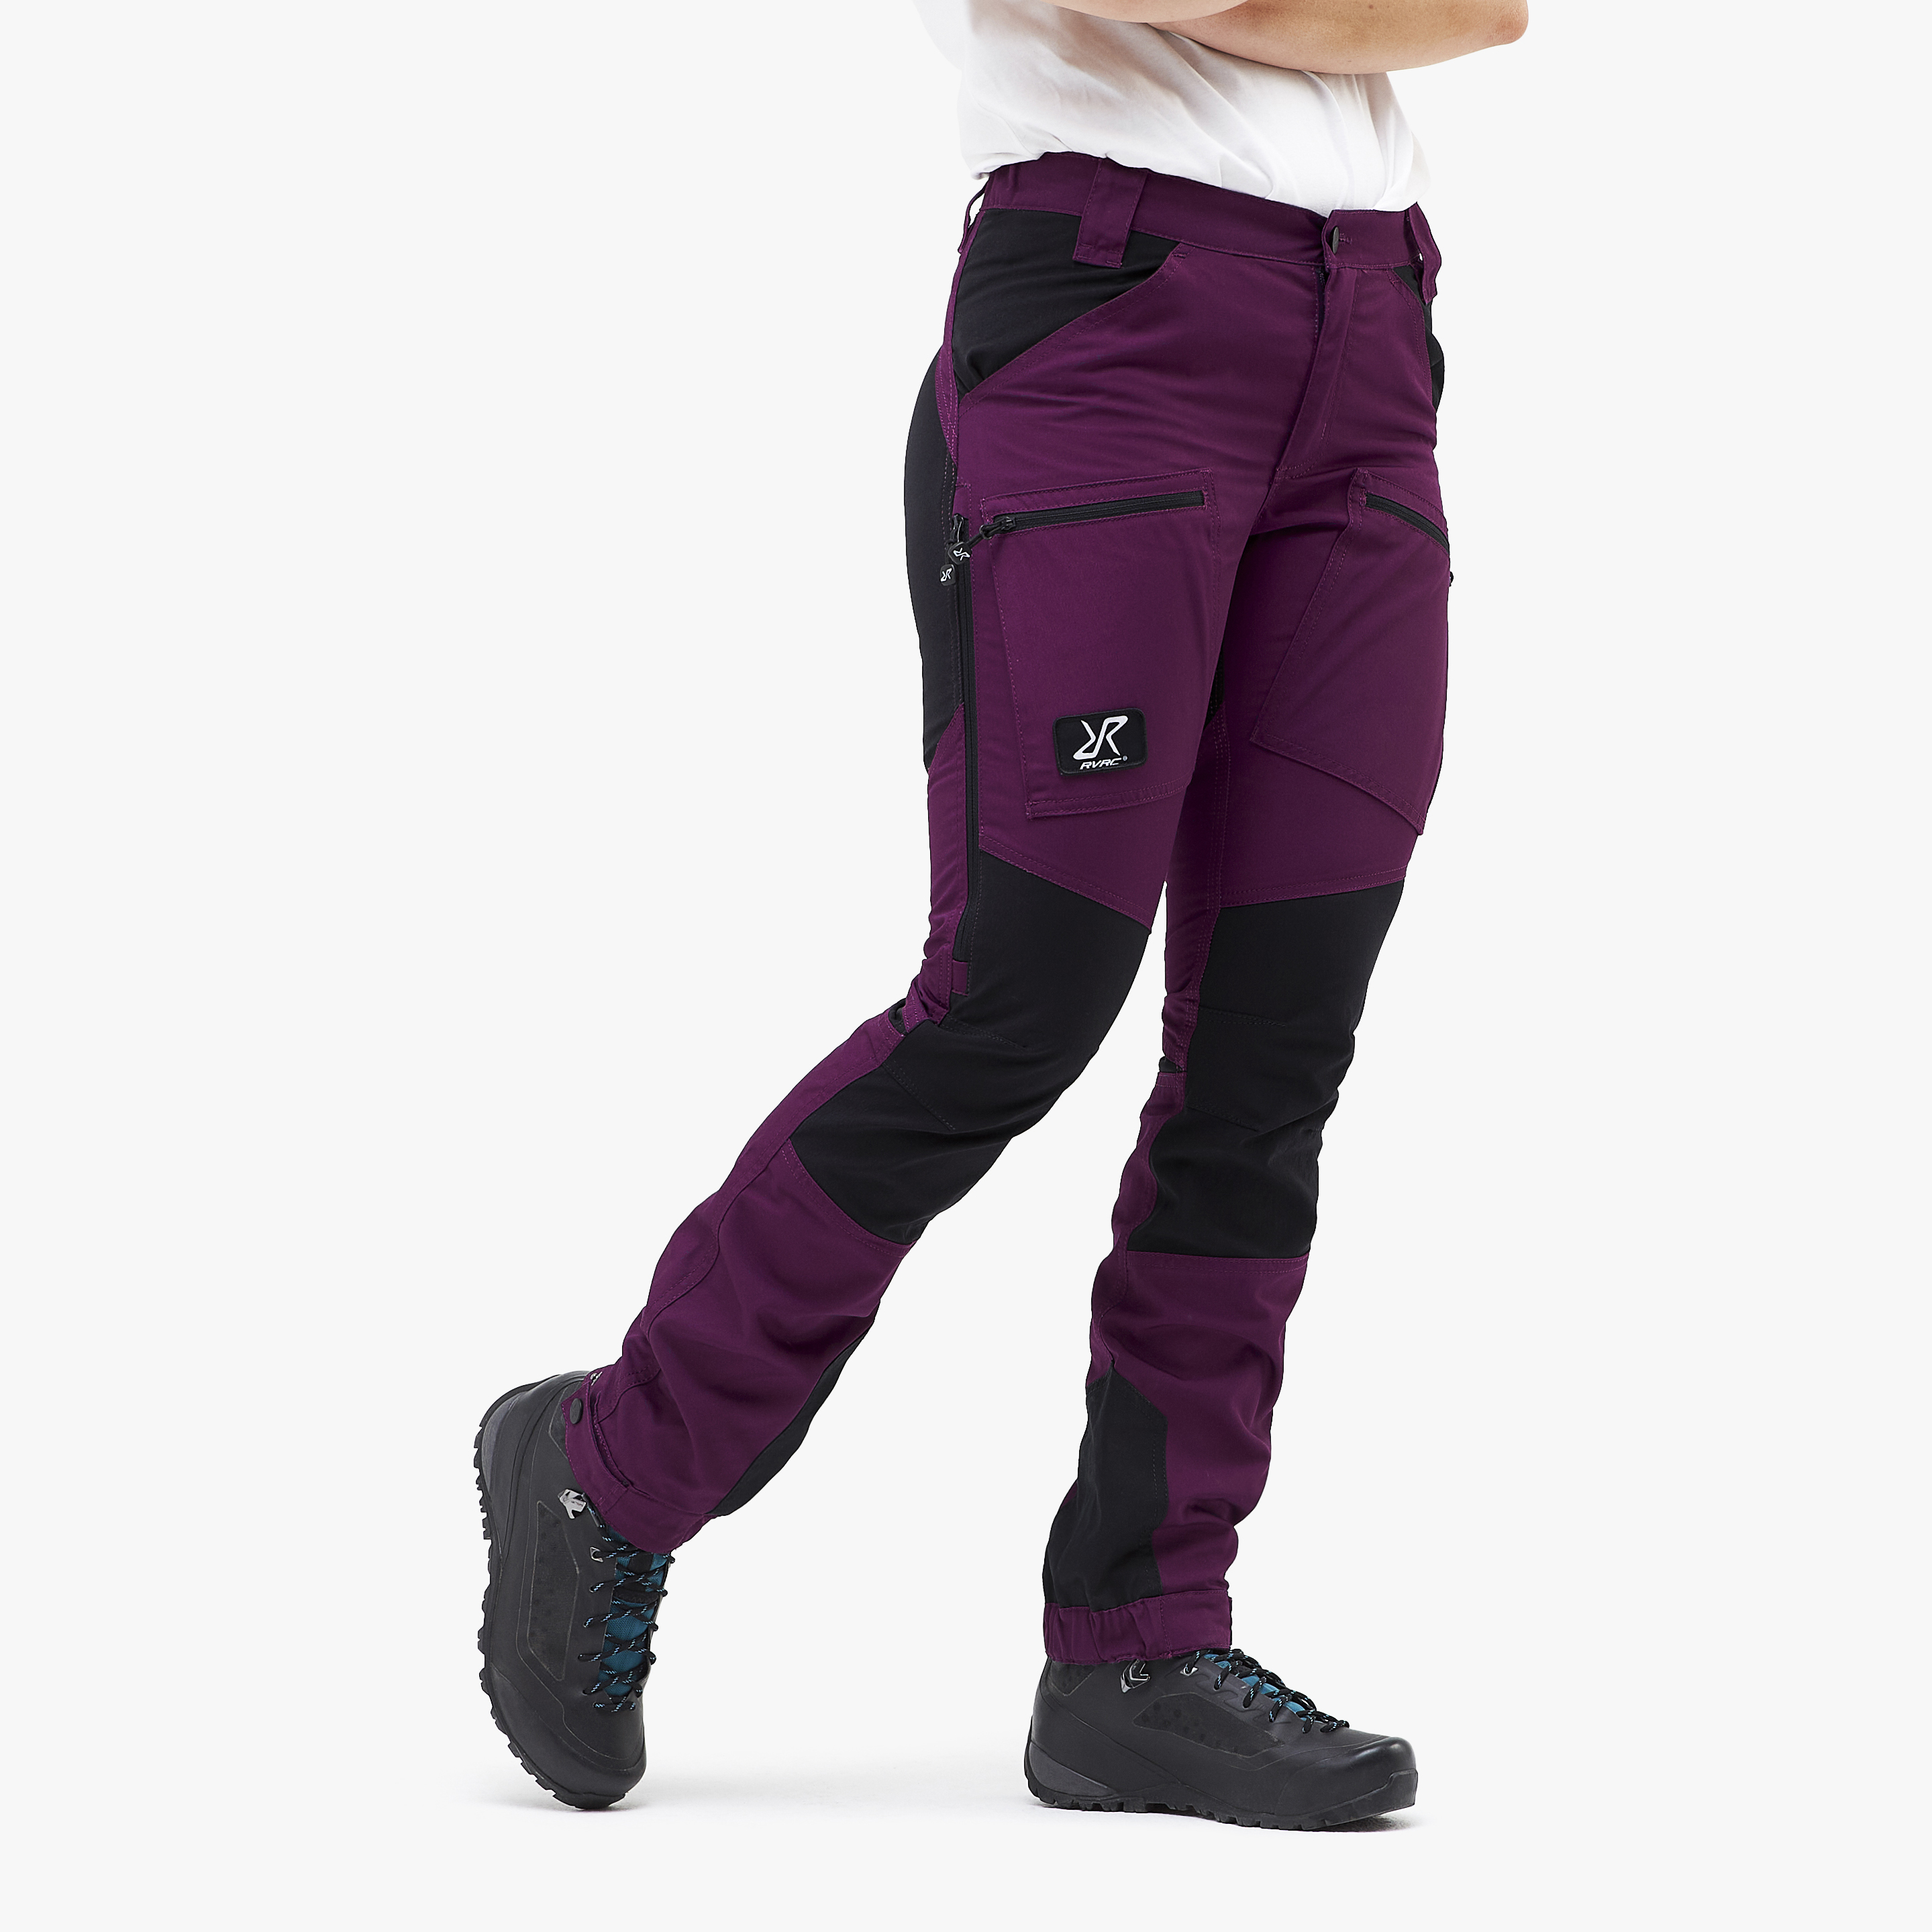 Nordwand Pro Short turistické kalhoty pro ženy v nachové barvě